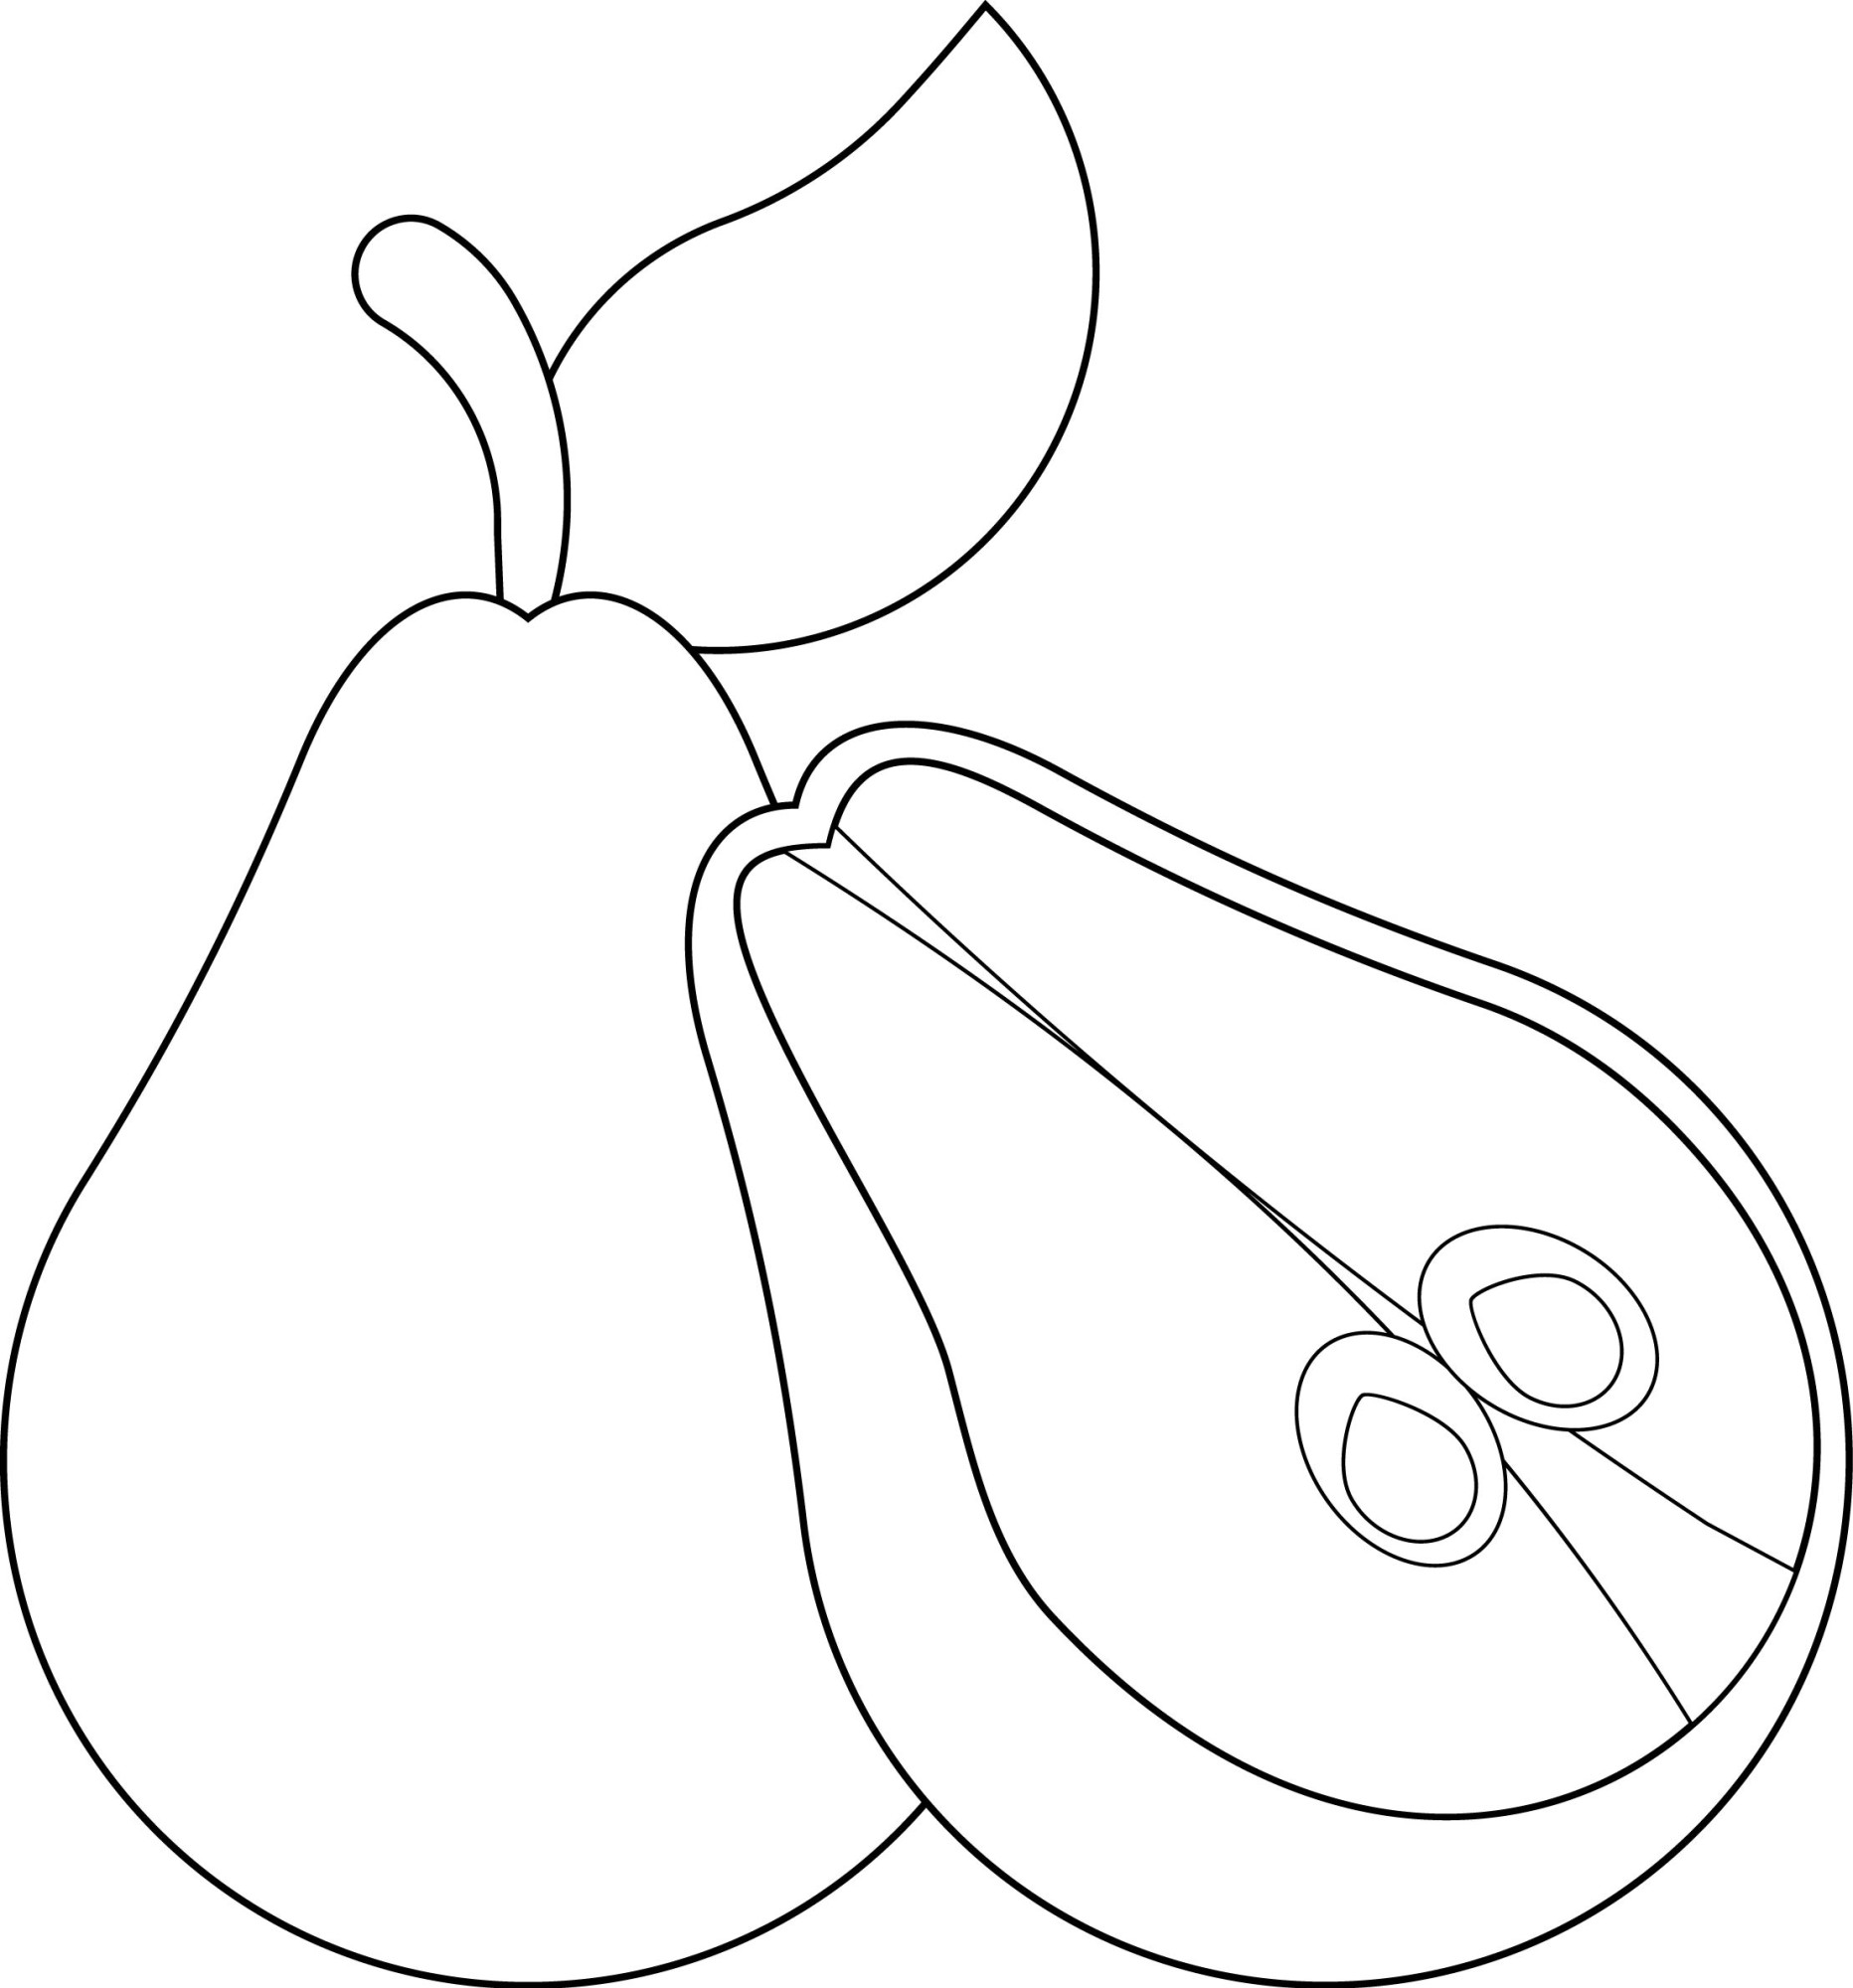 Раскраска для детей: здоровая груша с половинкой